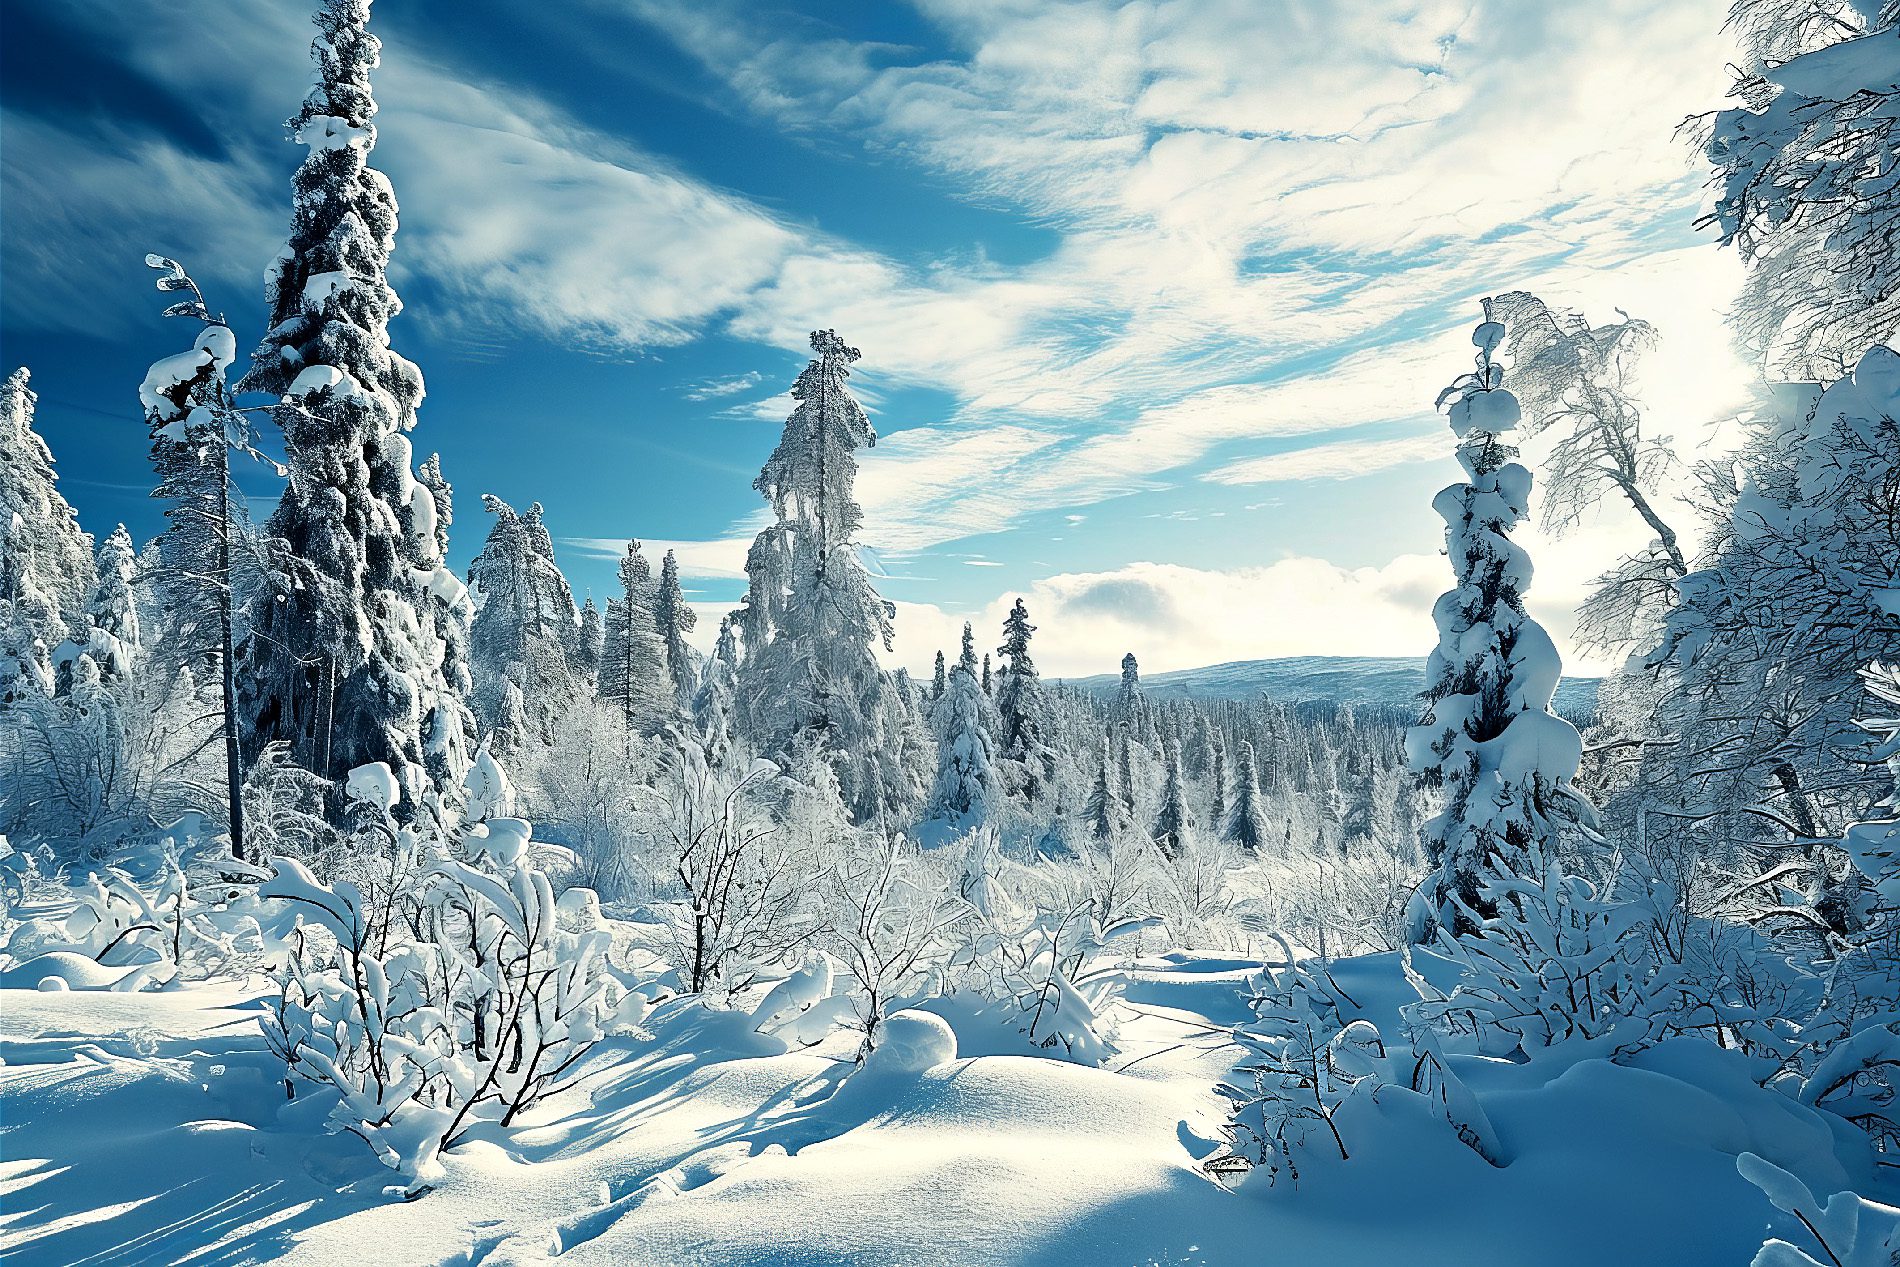 Eine Art Winter-Wonderland im nördlichen Schweden.